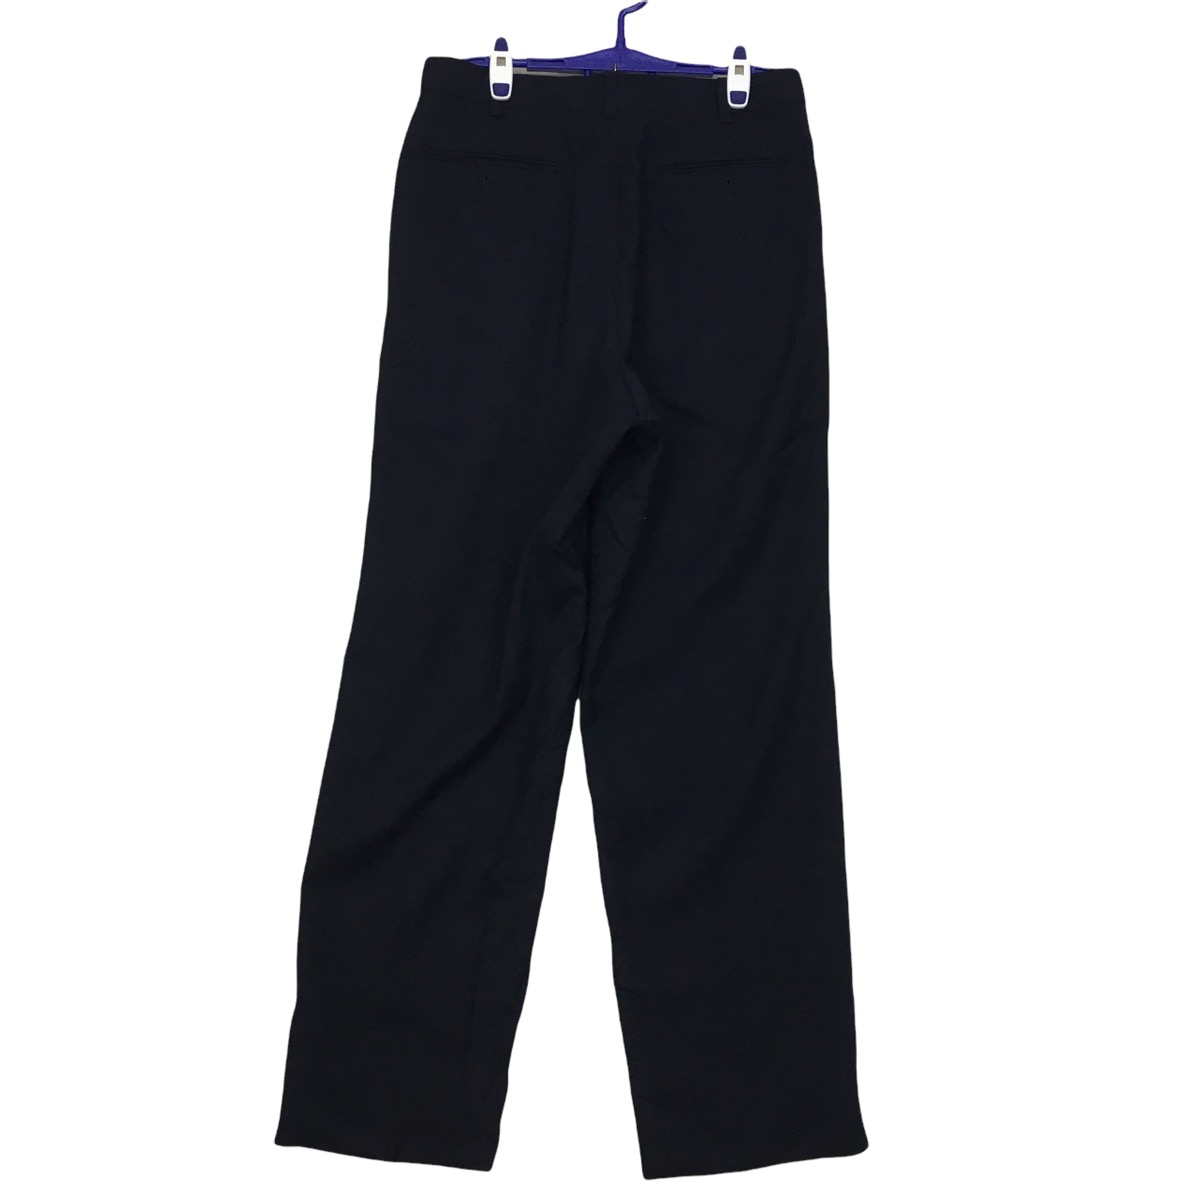 LANVIN CLASSIQUE Stretch Waist Long Pants Trousers Formal - 4